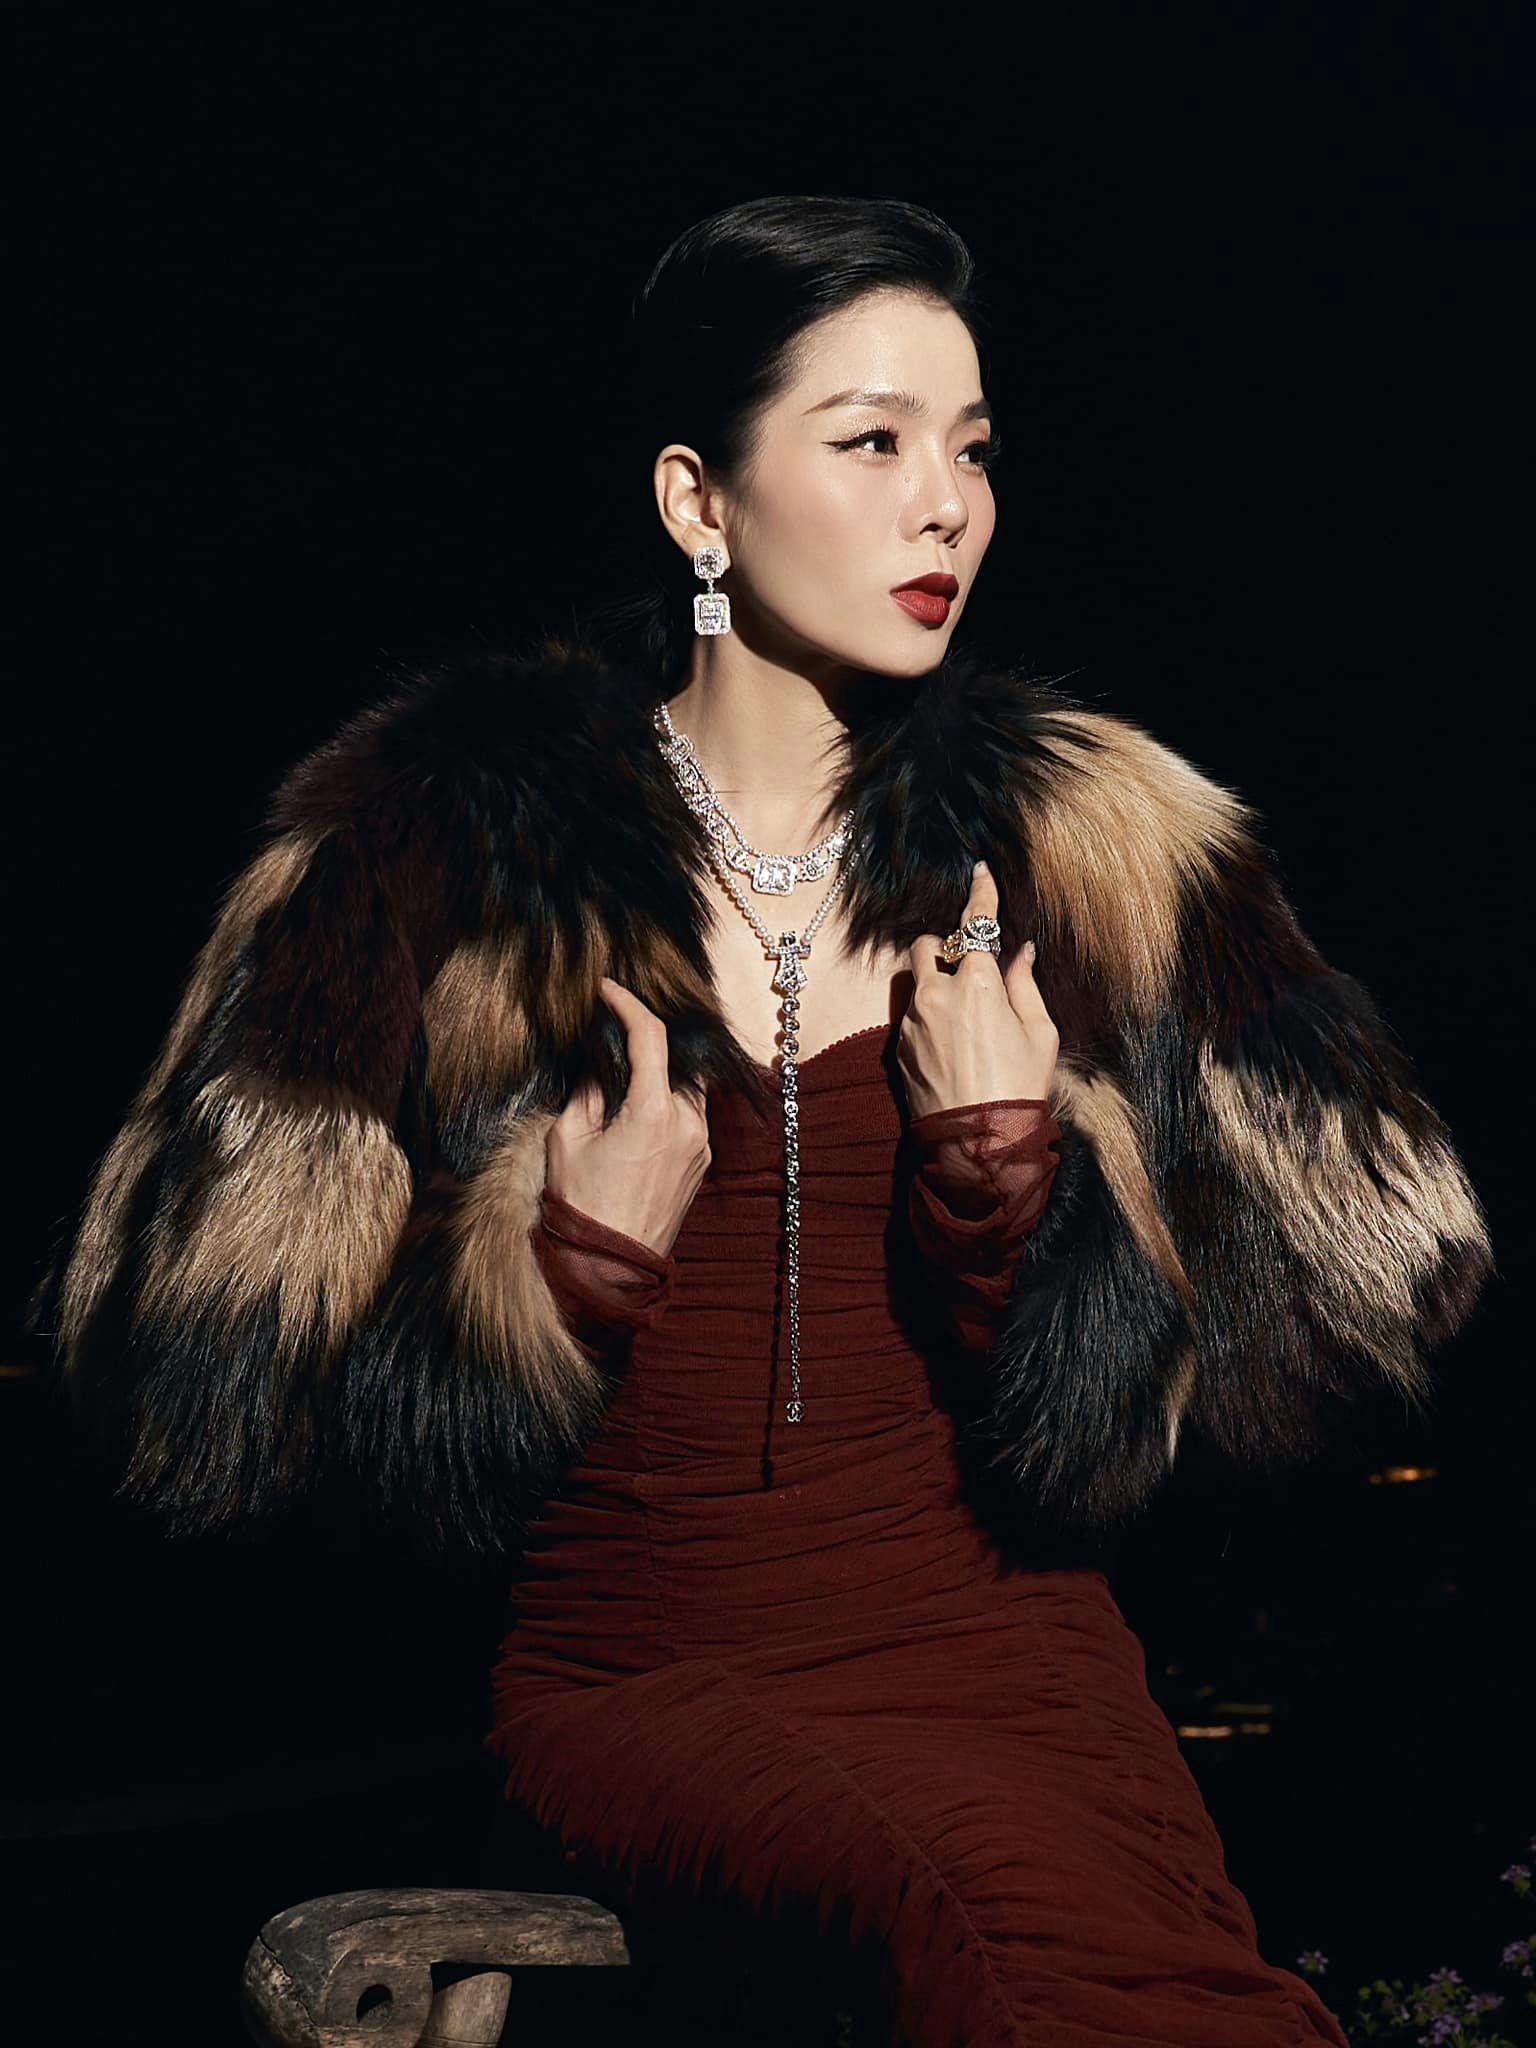 Lệ Quyên nổi tiếng là một trong những sao nữ giàu có của showbiz Việt. Ngoài sở hữu loạt bất động sản giá trị và trang sức kim cương đắt đỏ, cô còn có cả một gia tài đồ hiệu bạc tỷ, khiến nhiều khán giả ngưỡng mộ.